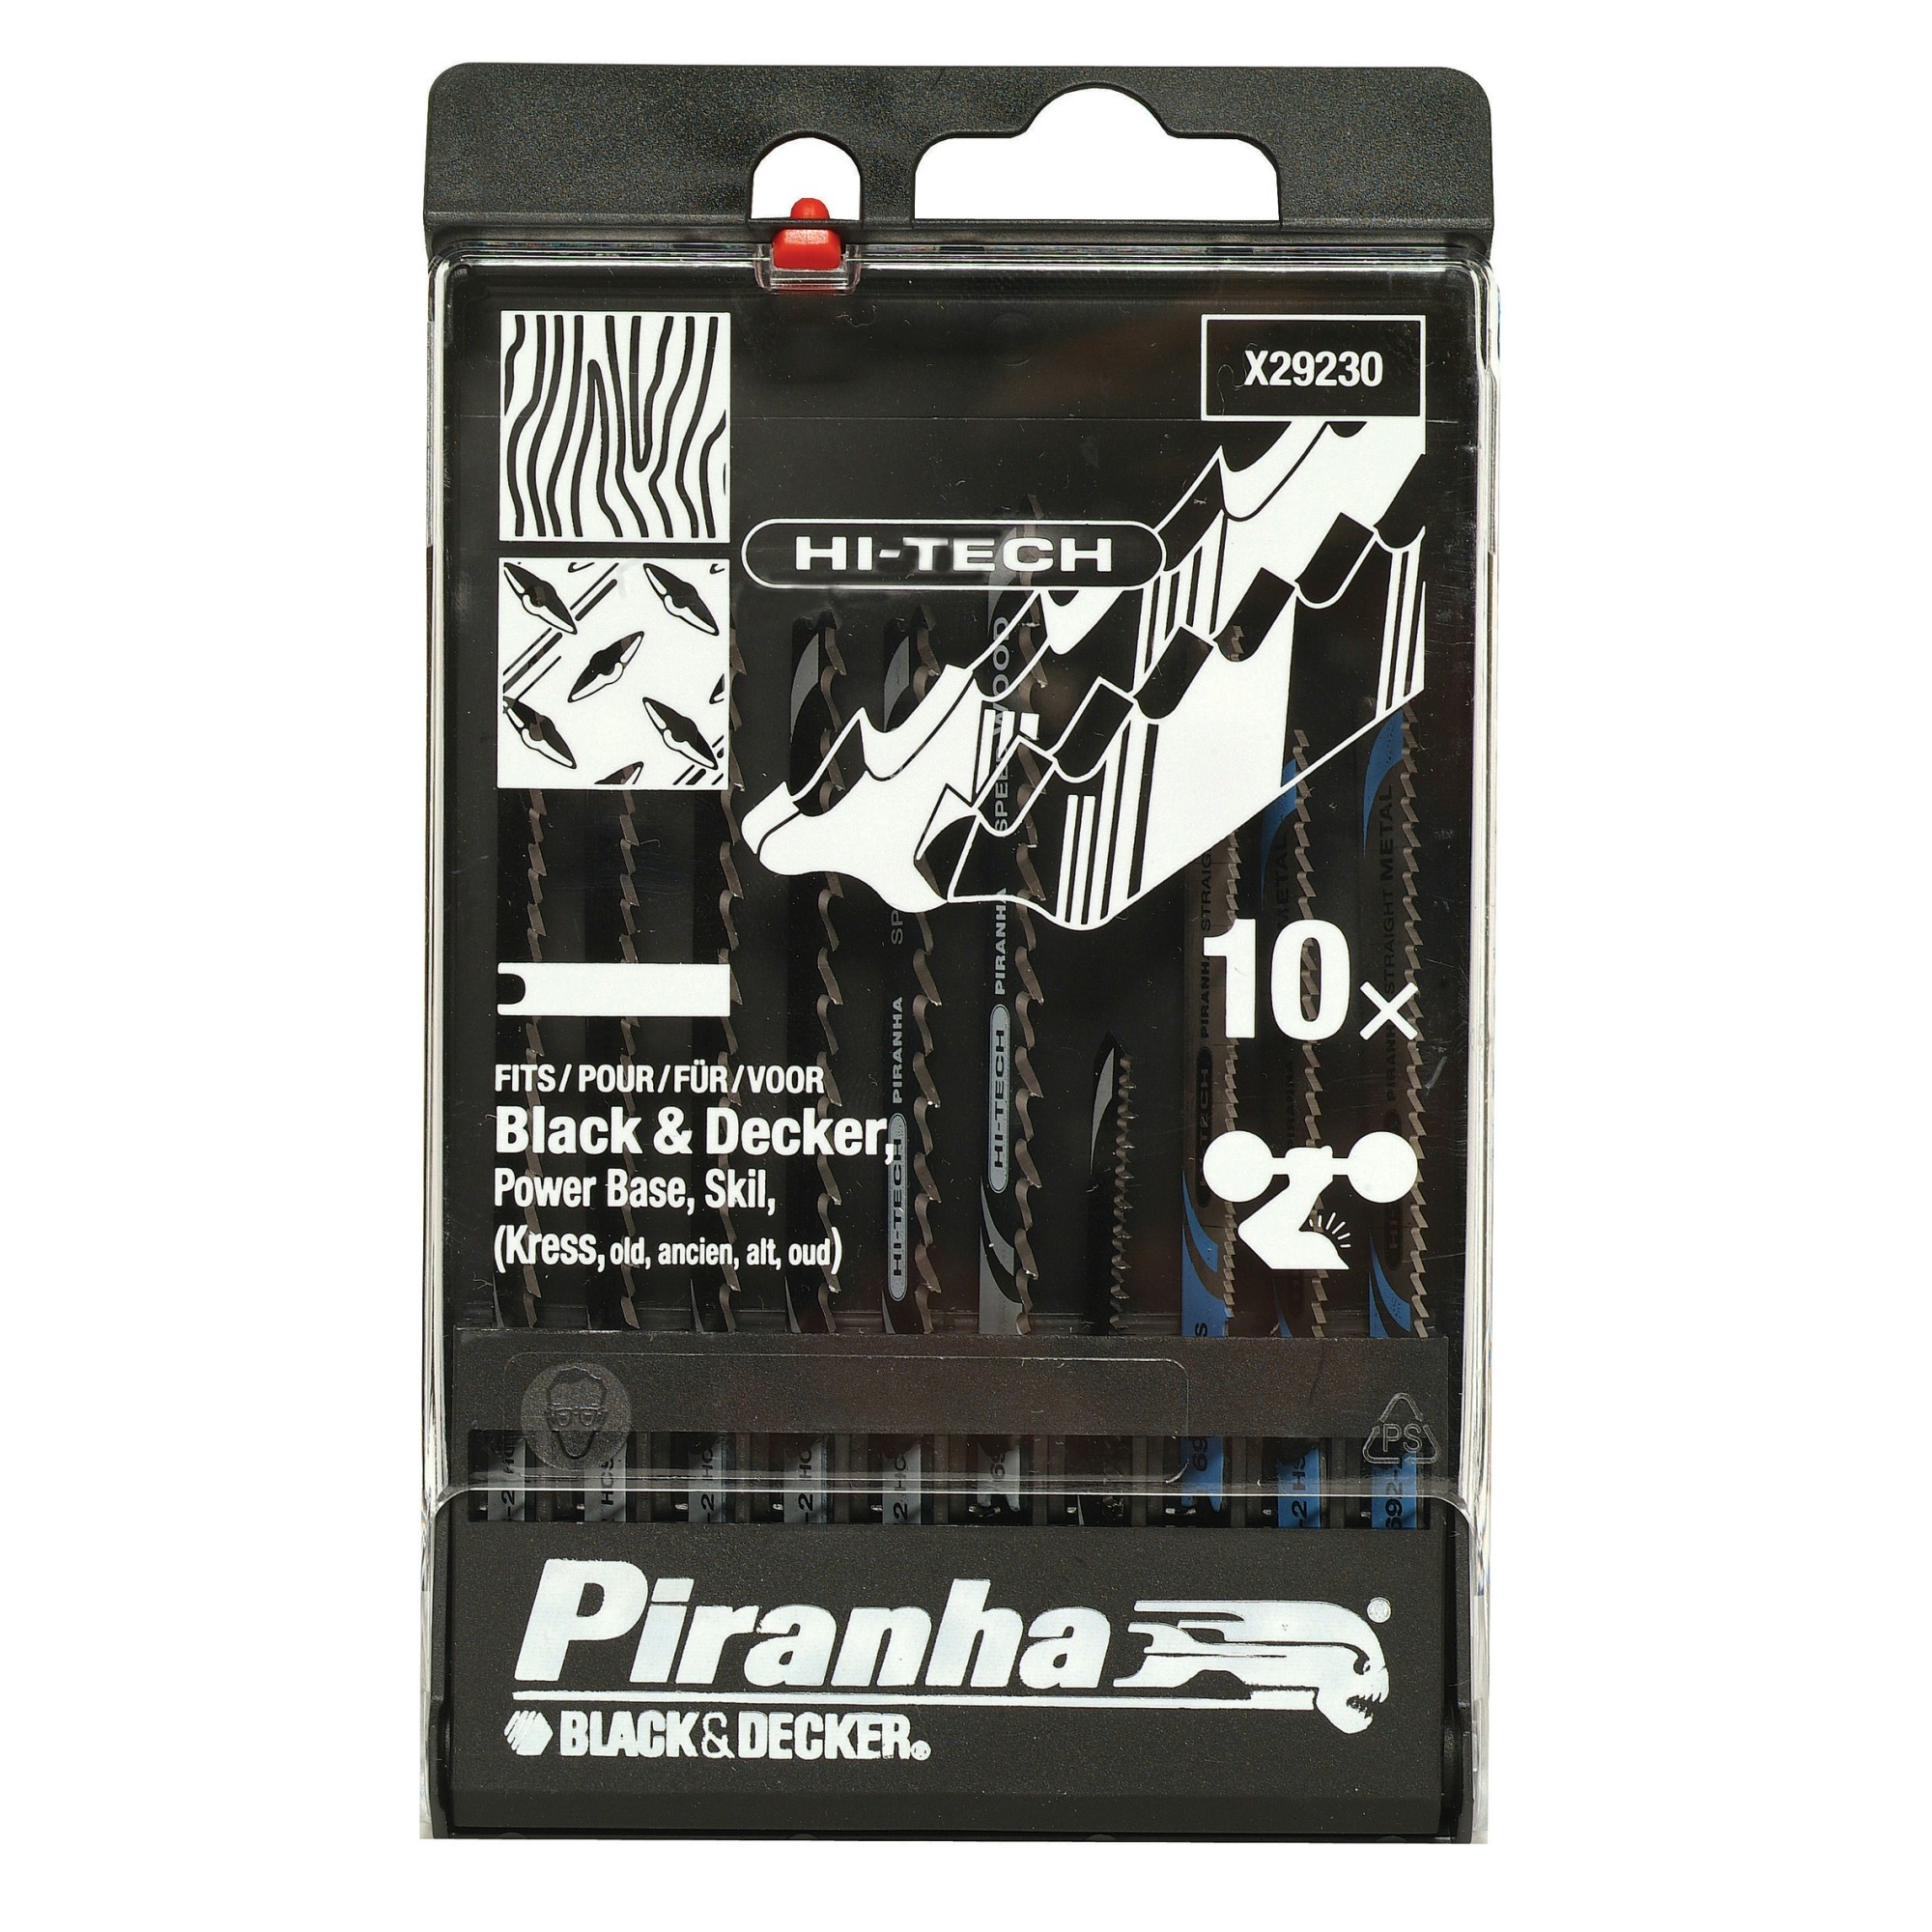 Piranha x29230 cassette hout/metaal 10st b&d hitech